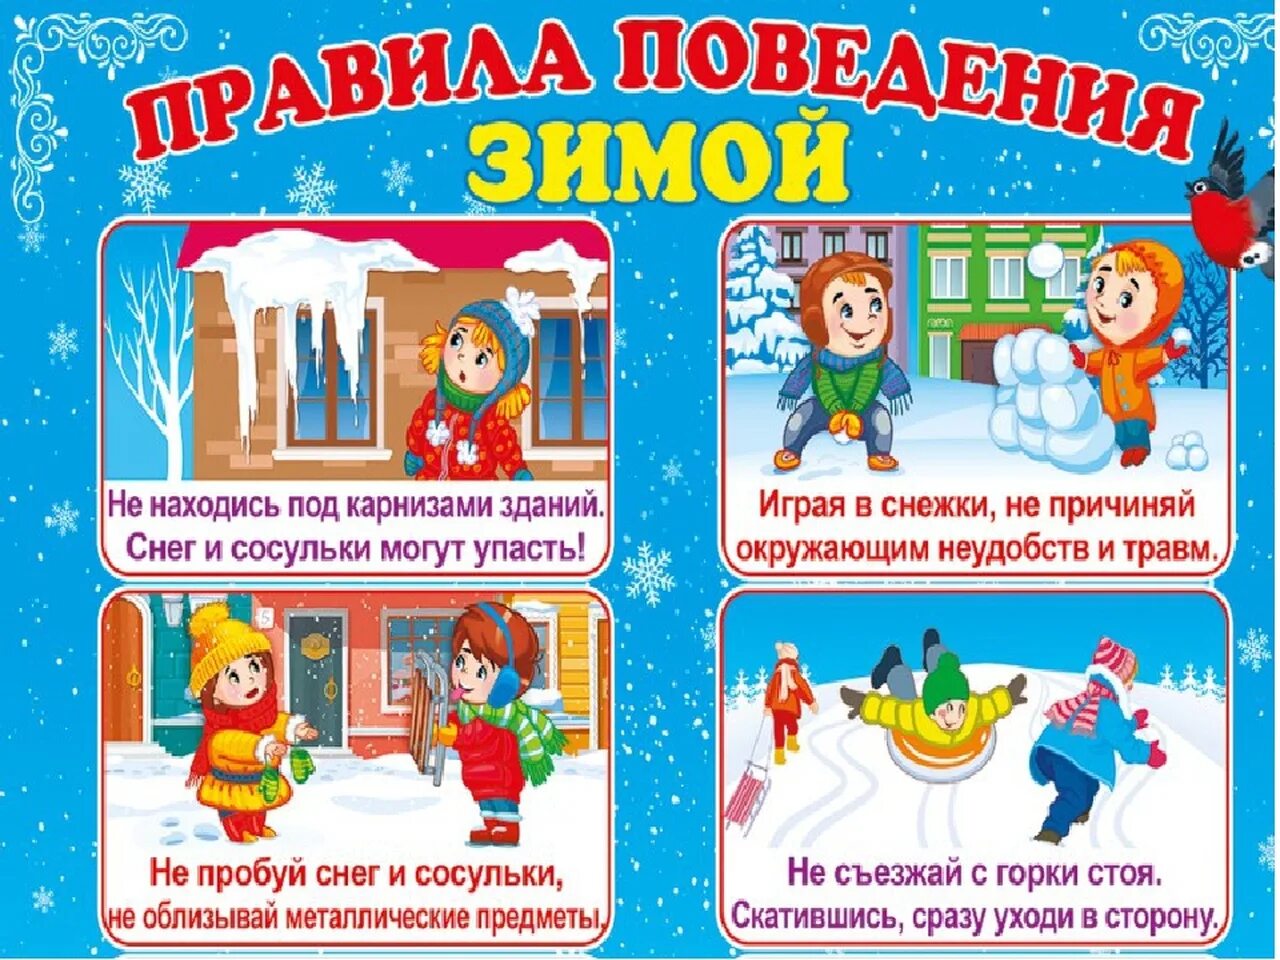 Проведем безопасные каникулы. Правила безопасности зимой для детей. Меры безопасности зимой для детей. Безопасная зима для детей. Безопасность зимой в детском саду.